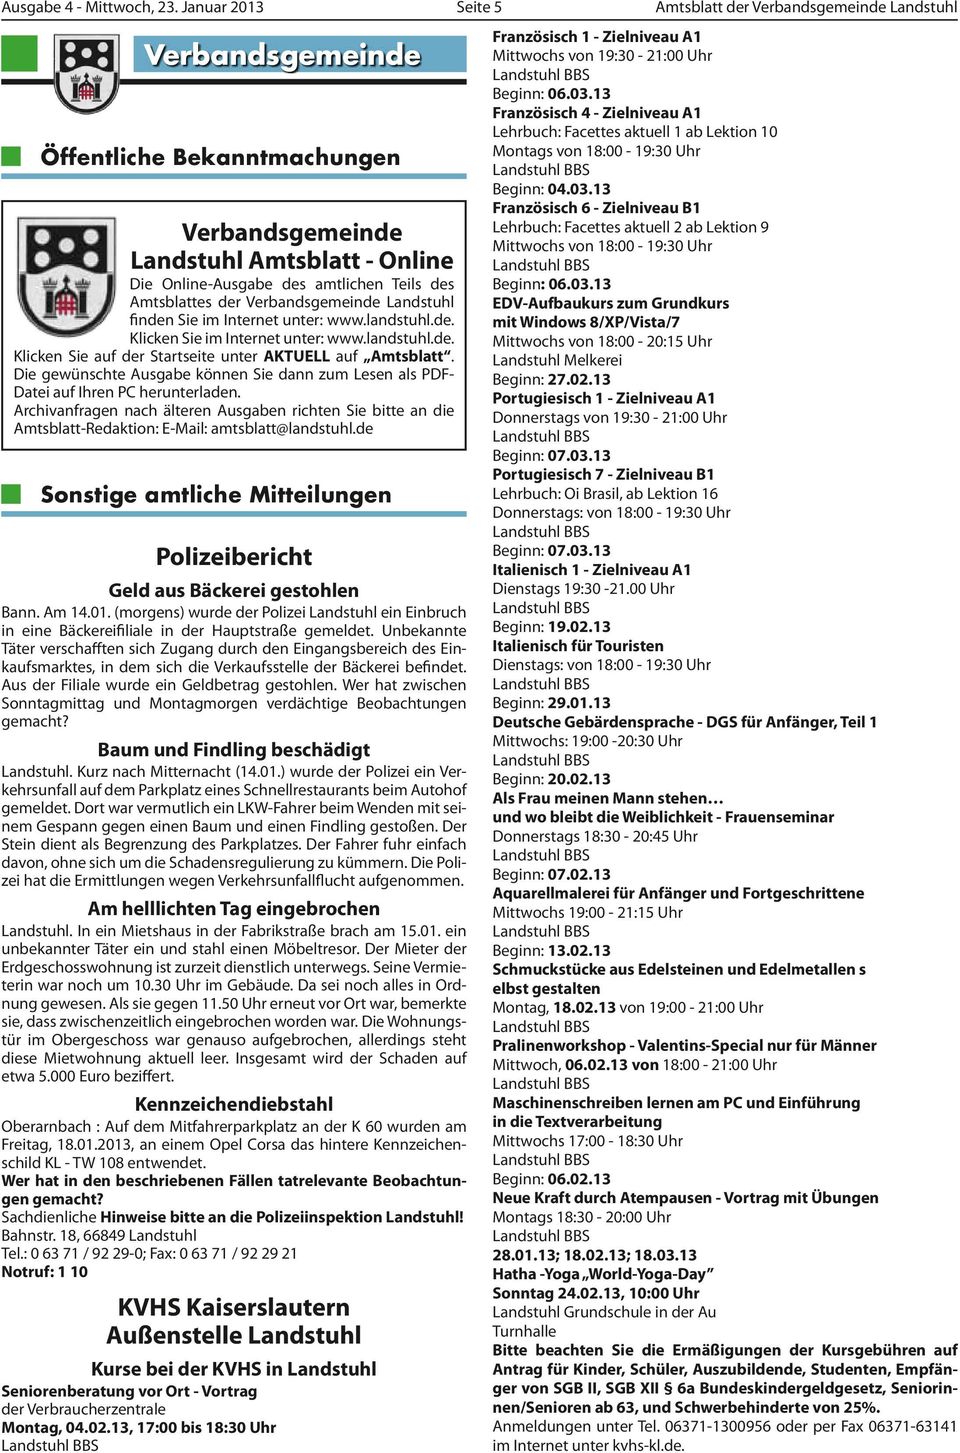 Amtsblattes der Verbandsgemeinde Landstuhl finden Sie im Internet unter: www.landstuhl.de. Klicken Sie im Internet unter: www.landstuhl.de. Klicken Sie auf der Startseite unter AKTUELL auf Amtsblatt.